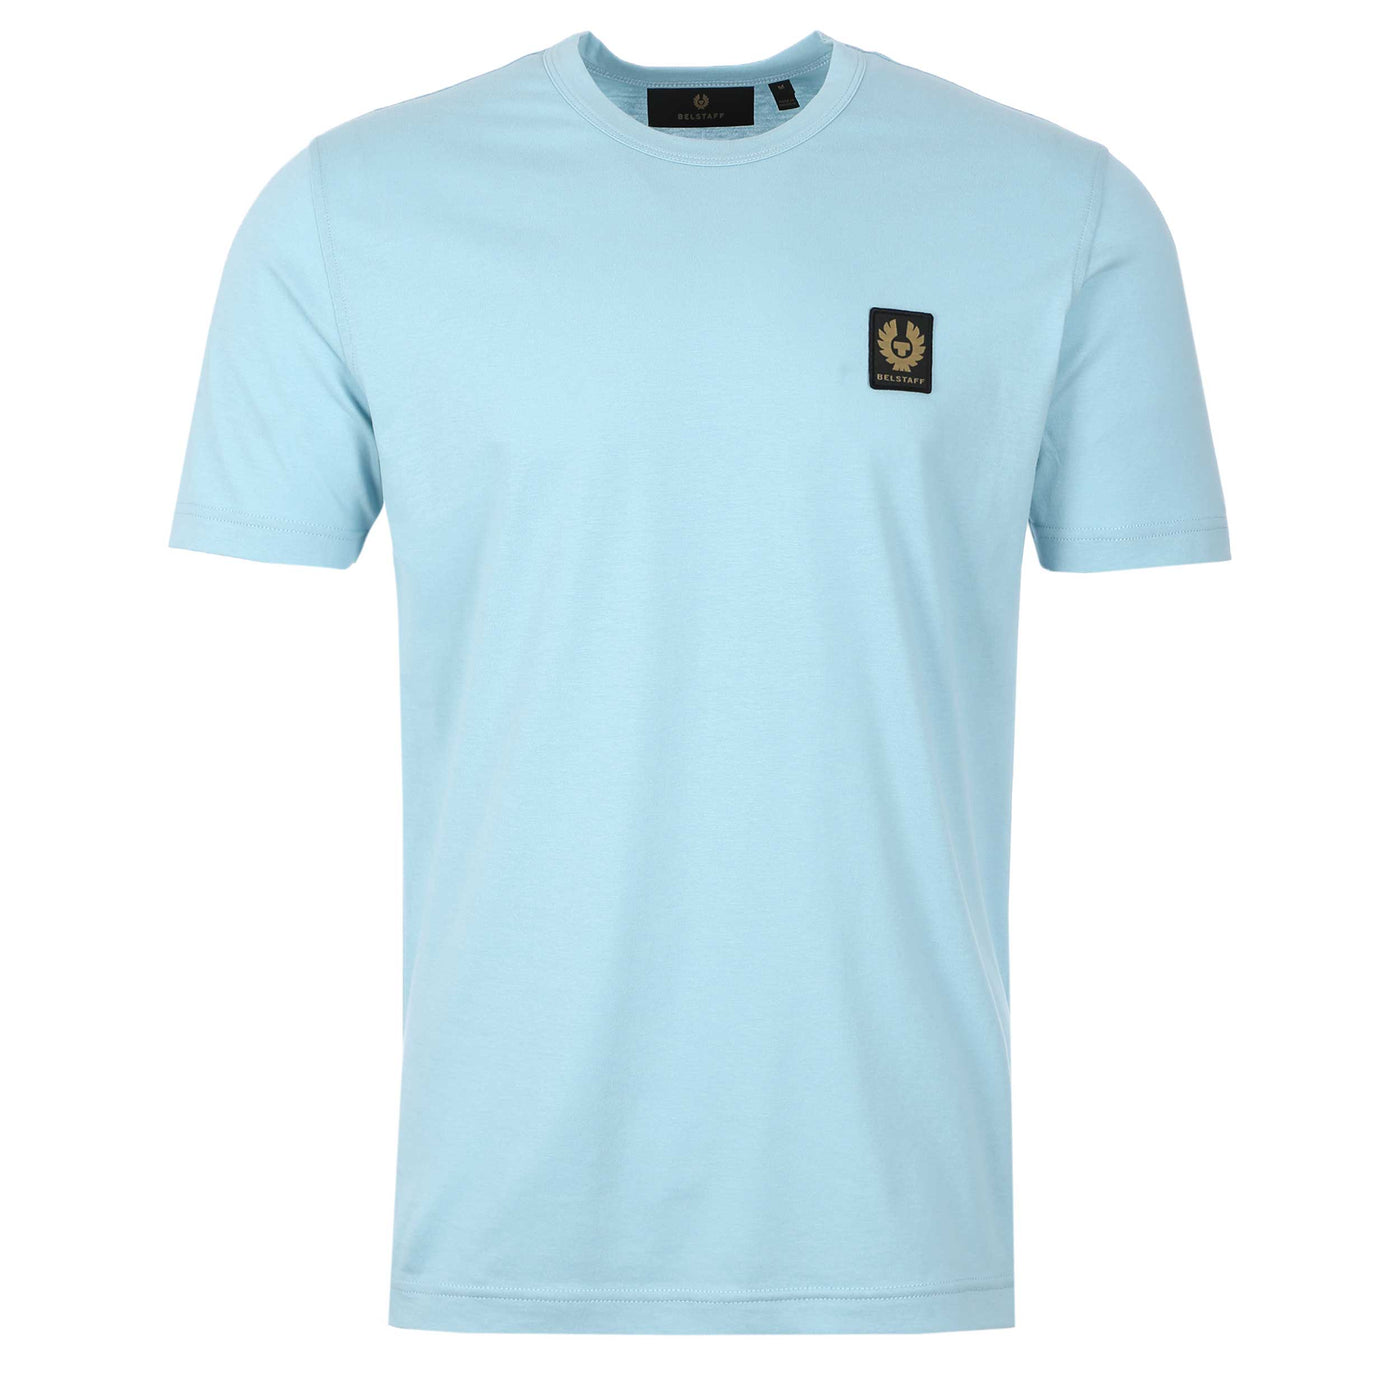 Belstaff Classic T-Shirt in Skyline Blue